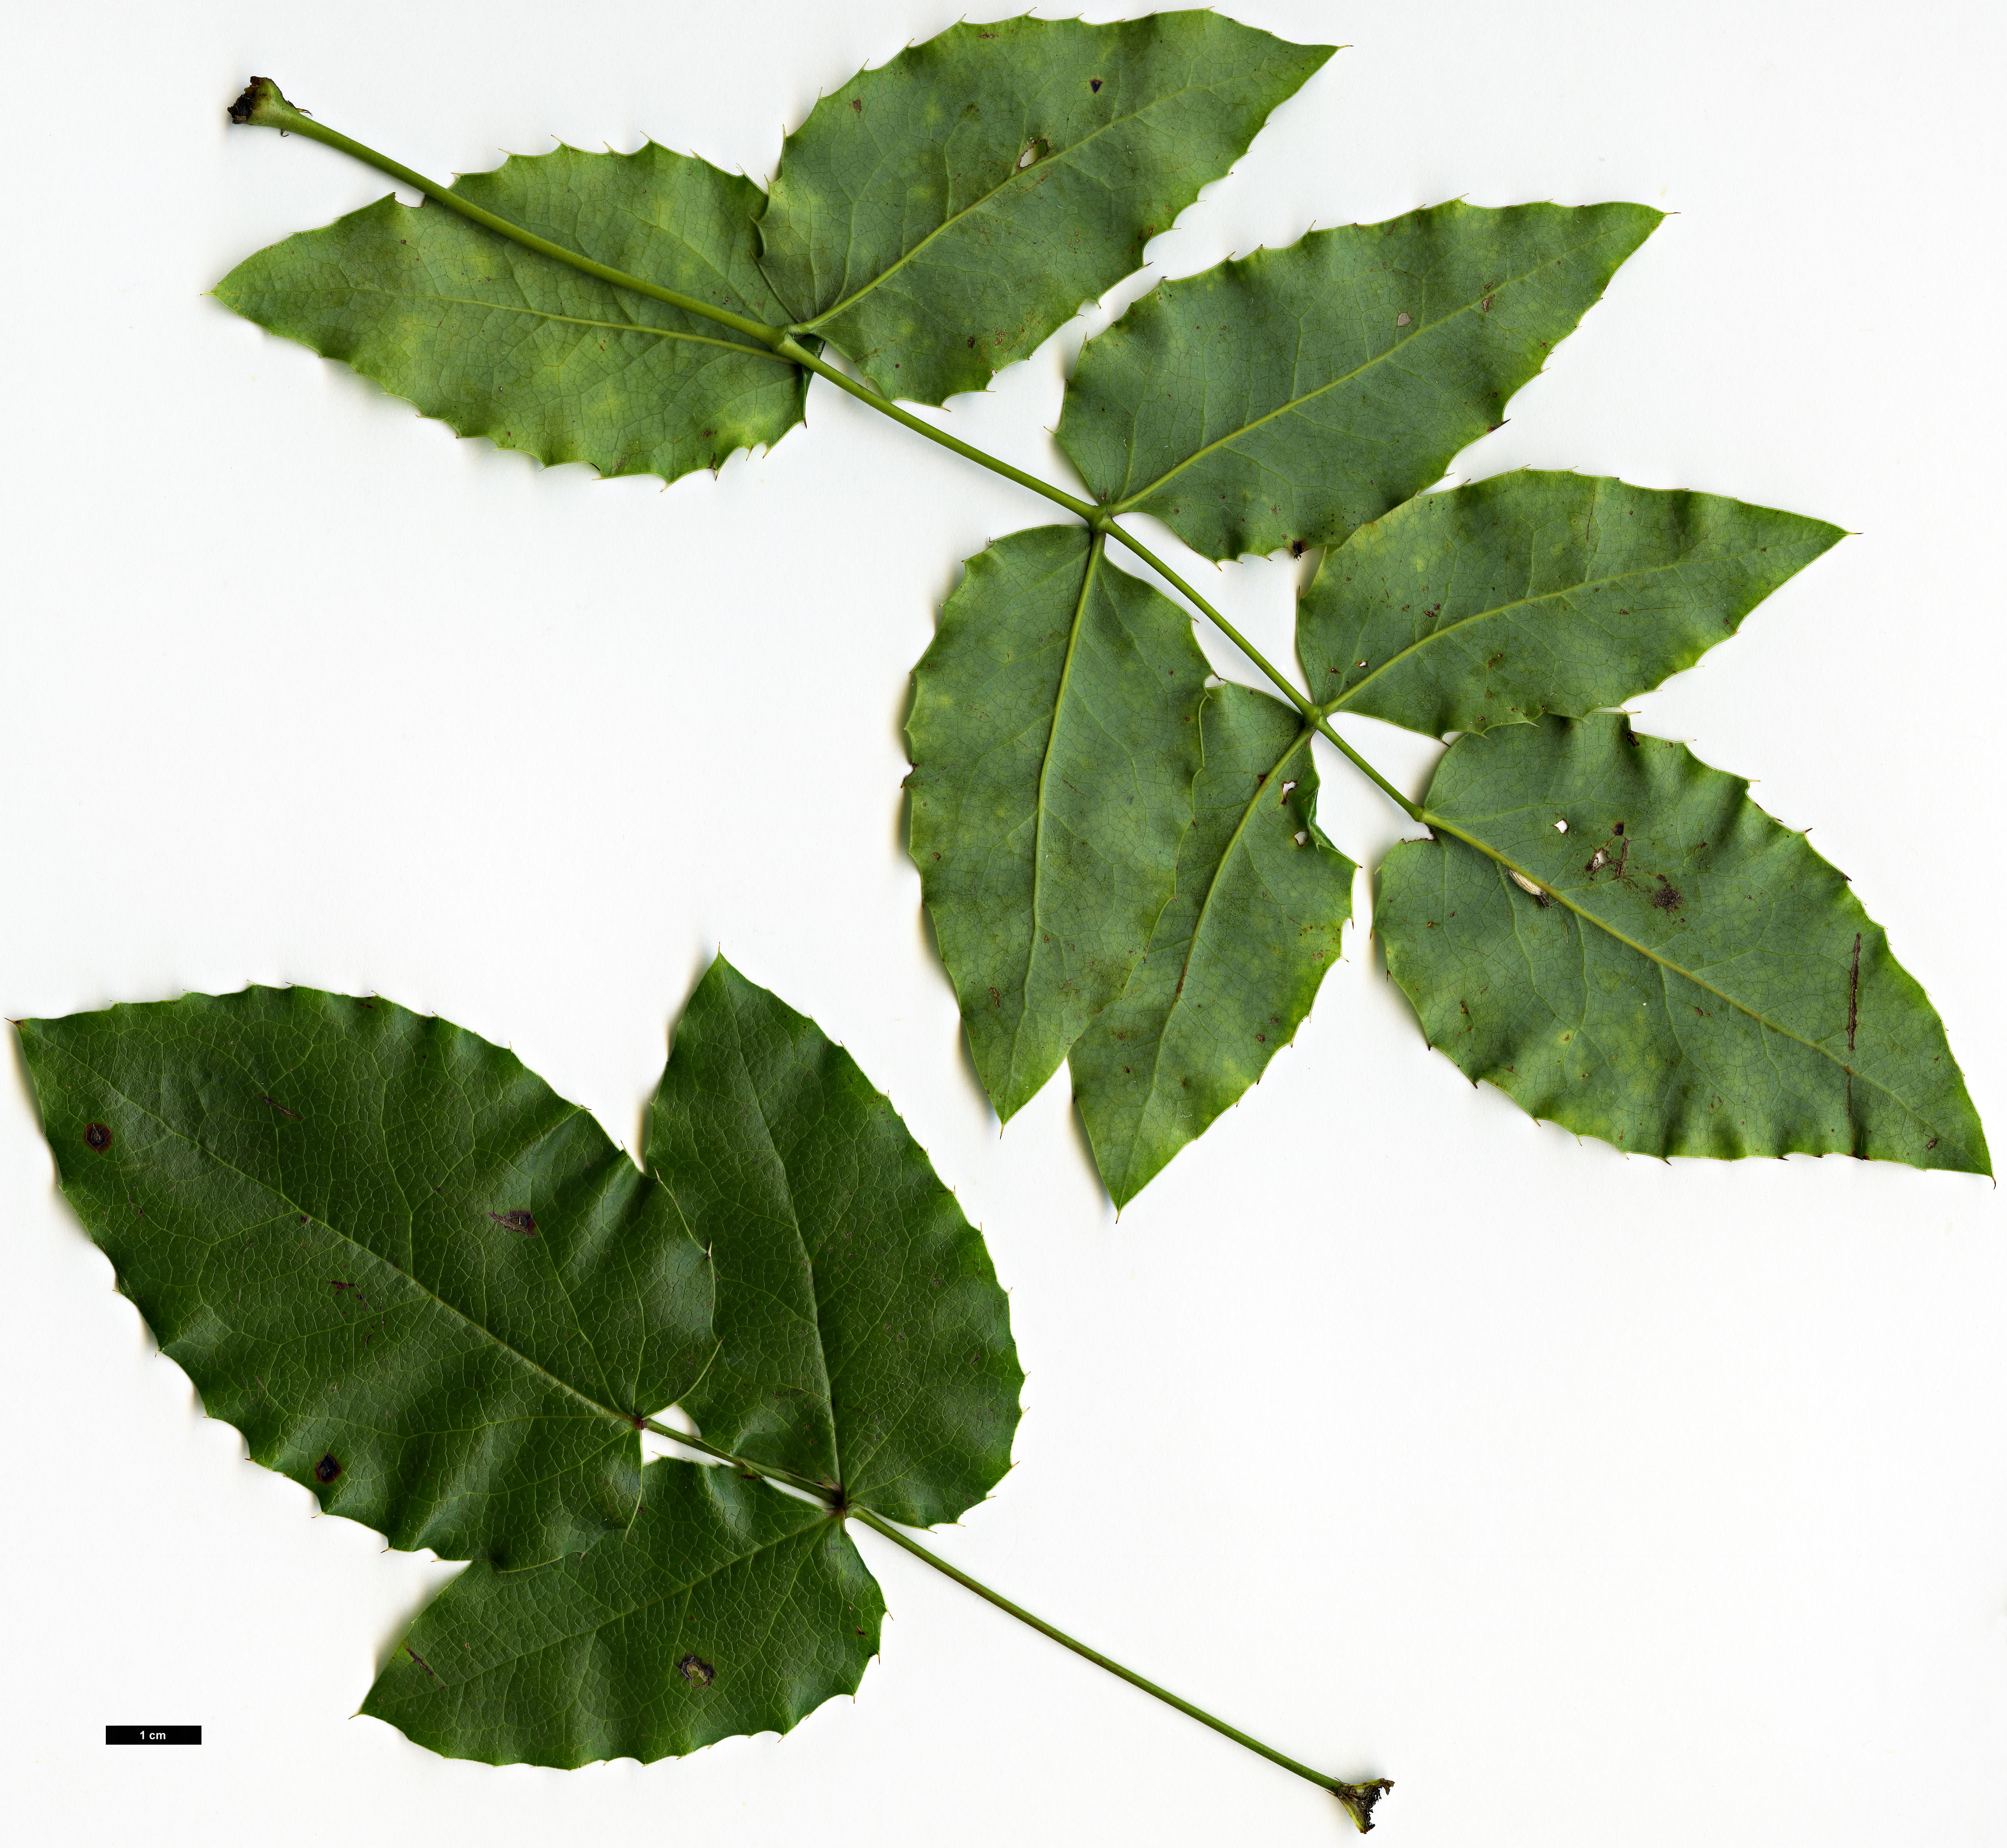 High resolution image: Family: Berberidaceae - Genus: Mahonia - Taxon: aquifolium